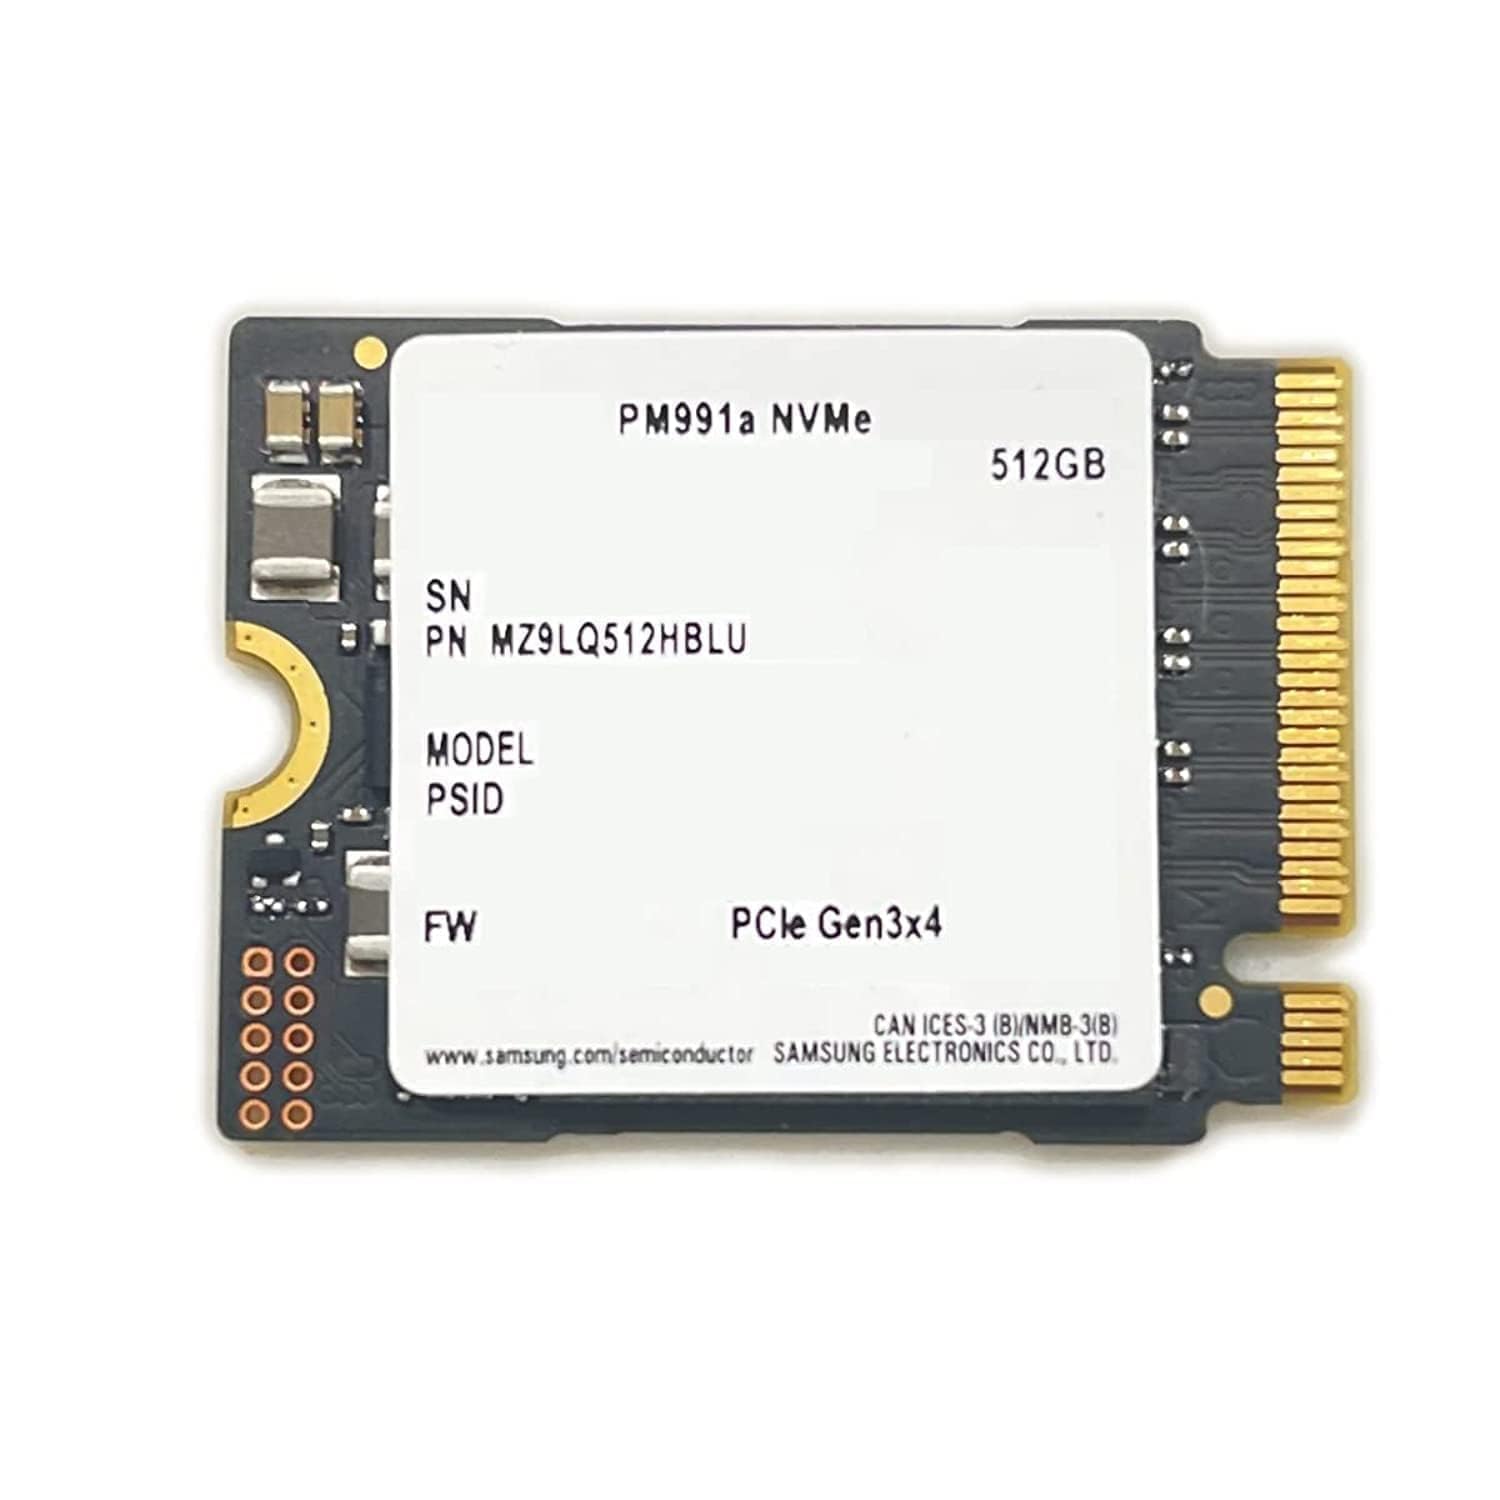 Samsung 512GB SSD M.2 2230 30mm PM991a NVMe PCIe Gen3 x4 MZ9LQ512HBLU ソリッドステートドライブ Surface Pro Steam